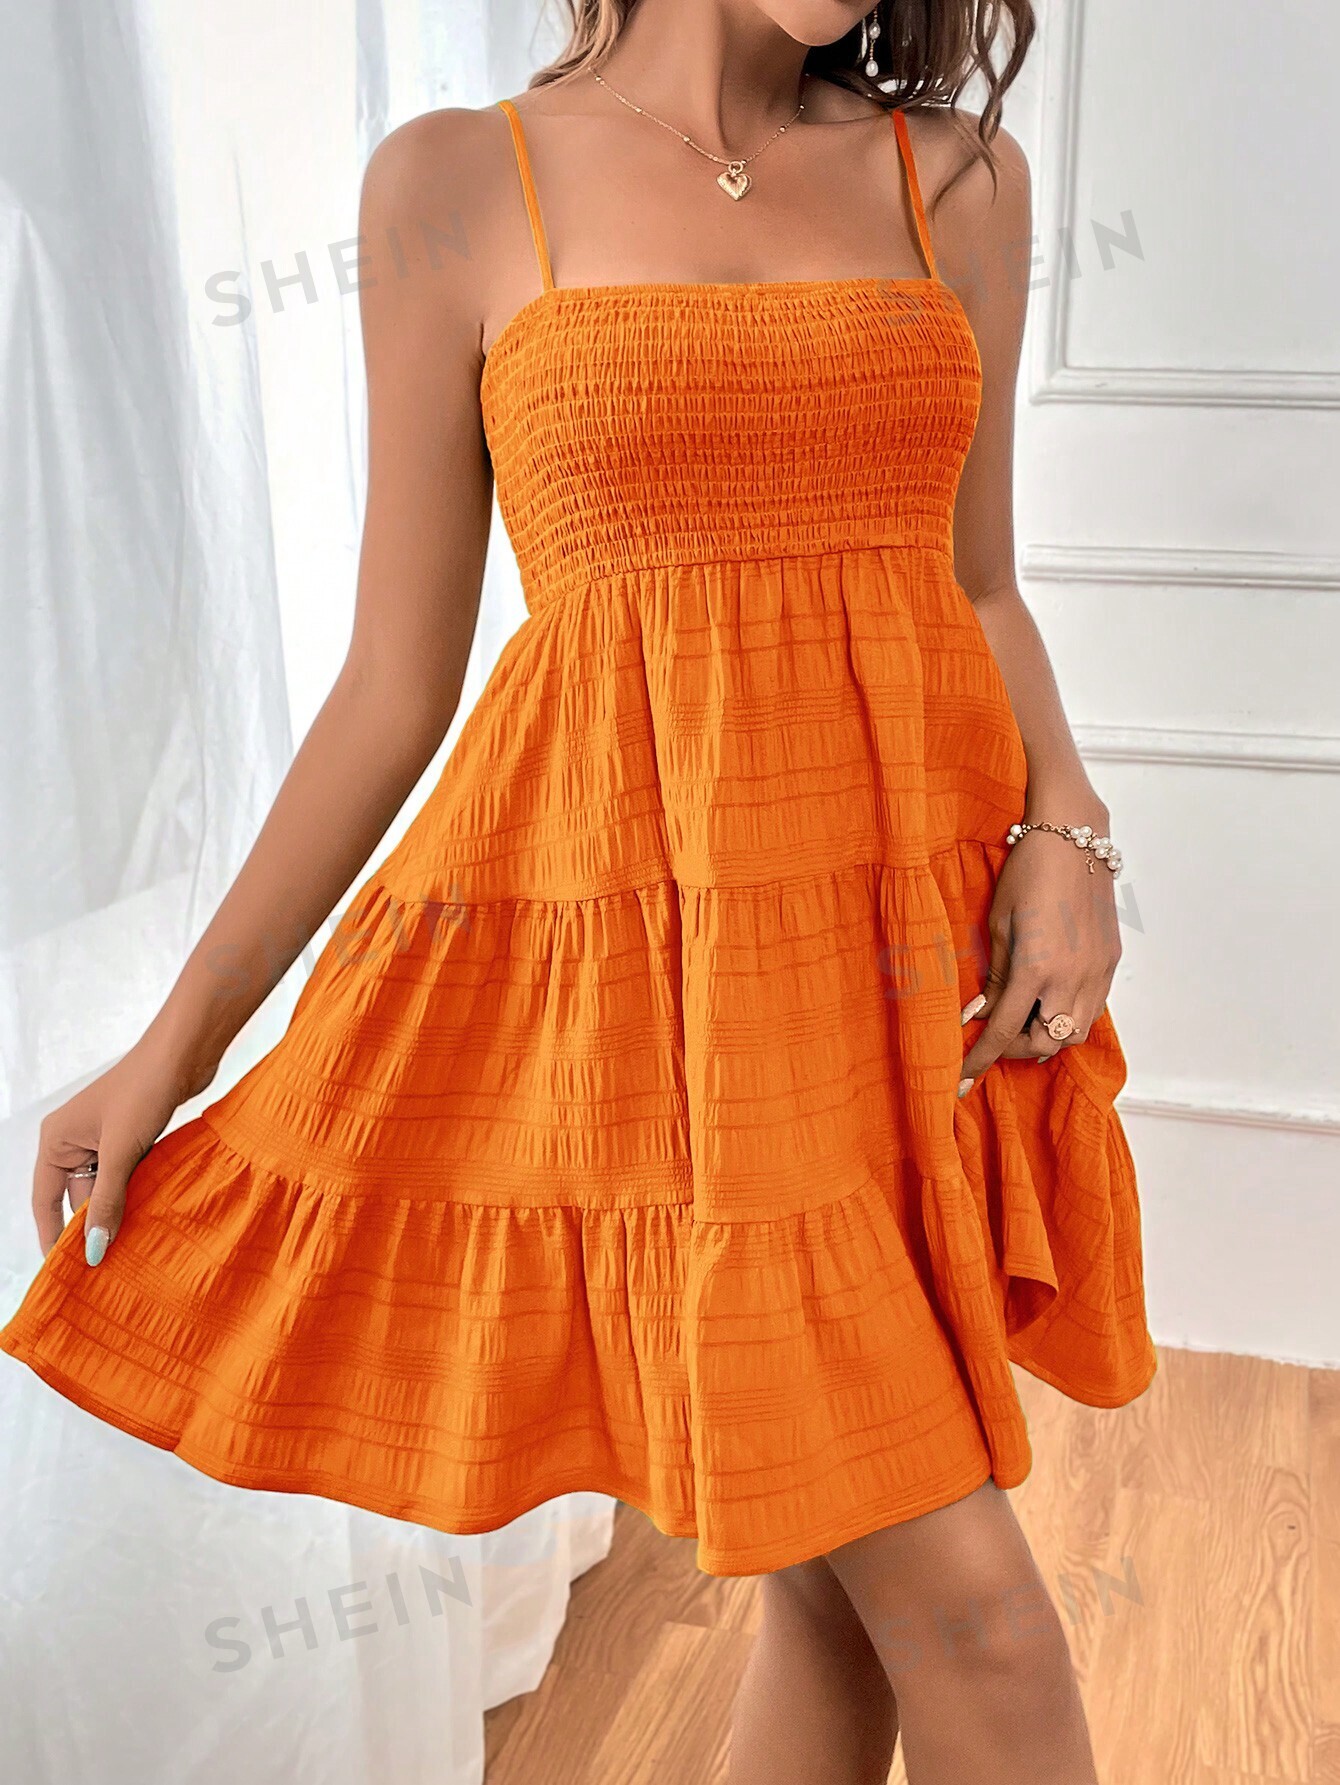 SHEIN WYWH Женское однотонное платье на тонких бретельках с оборками и подолом, апельсин фото